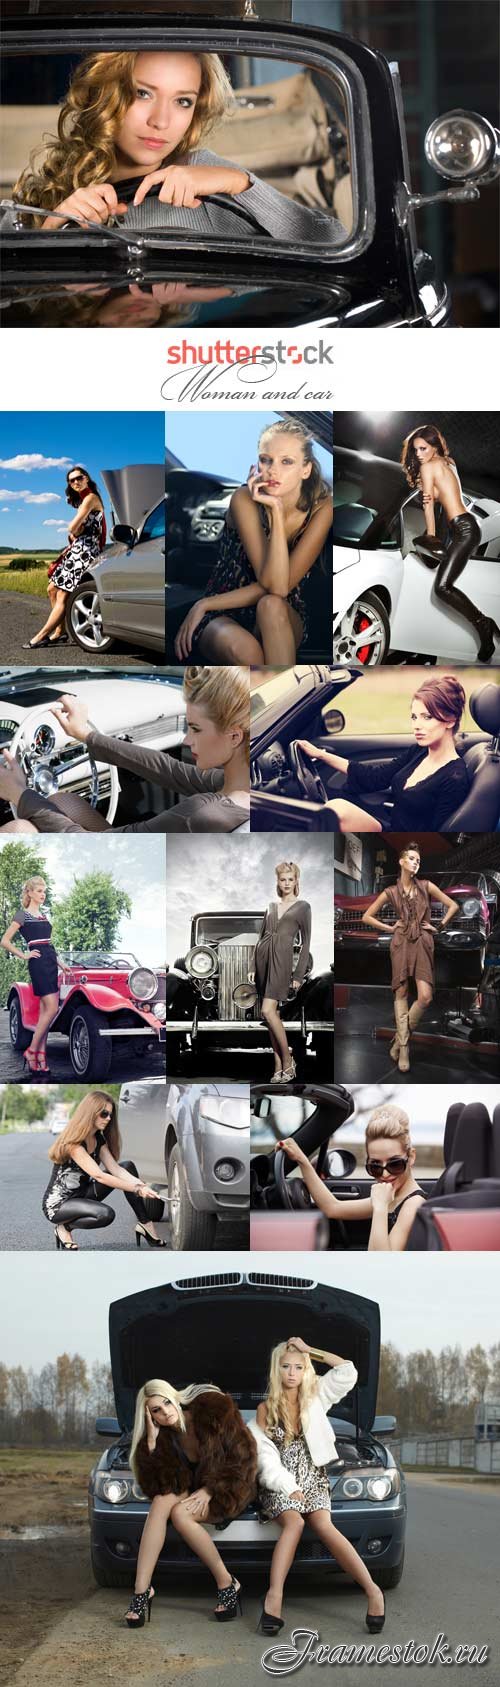 Woman and car stock photos